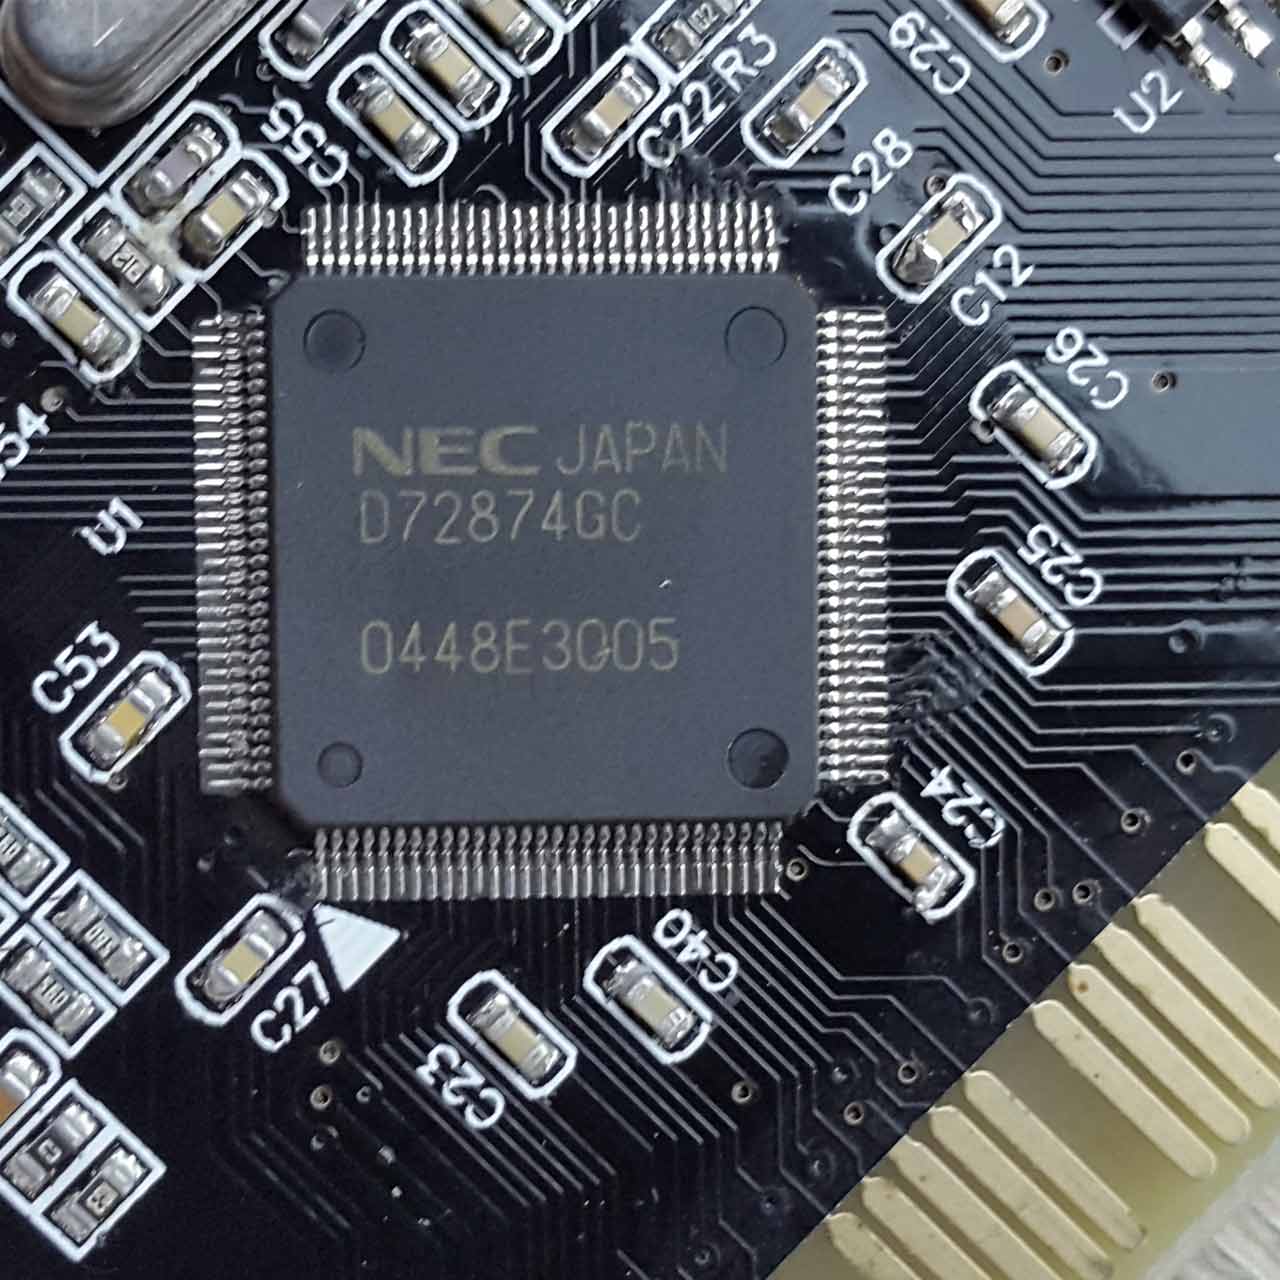 کارت PCI 1394 با چیپست NEC ژاپن